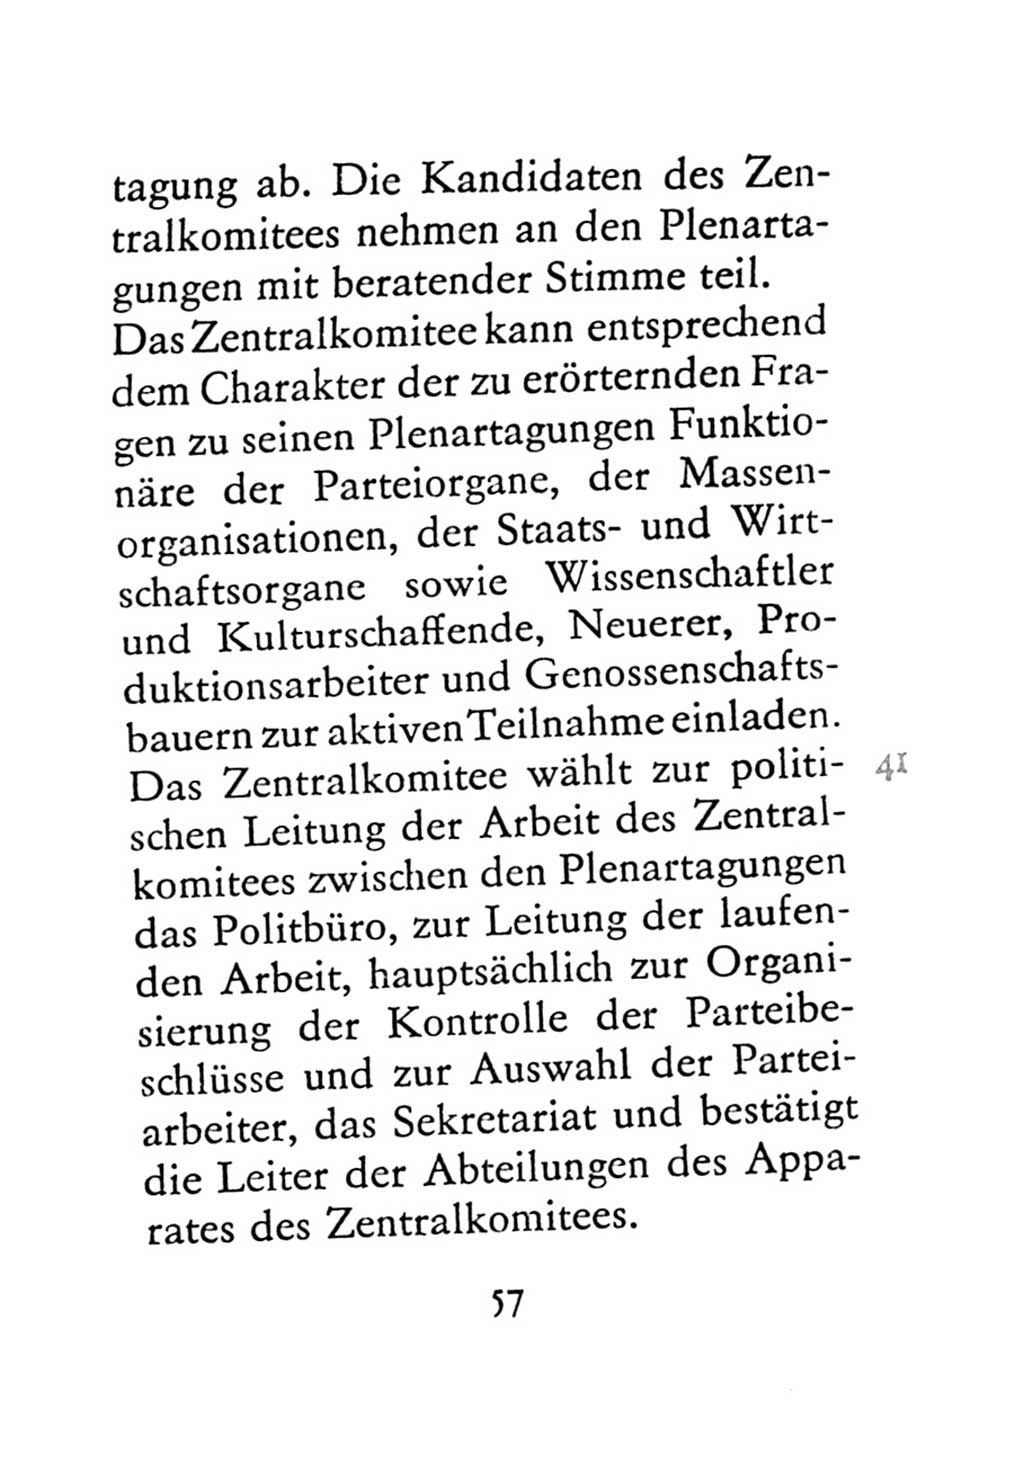 Statut der Sozialistischen Einheitspartei Deutschlands (SED) 1971, Seite 57 (St. SED DDR 1971, S. 57)